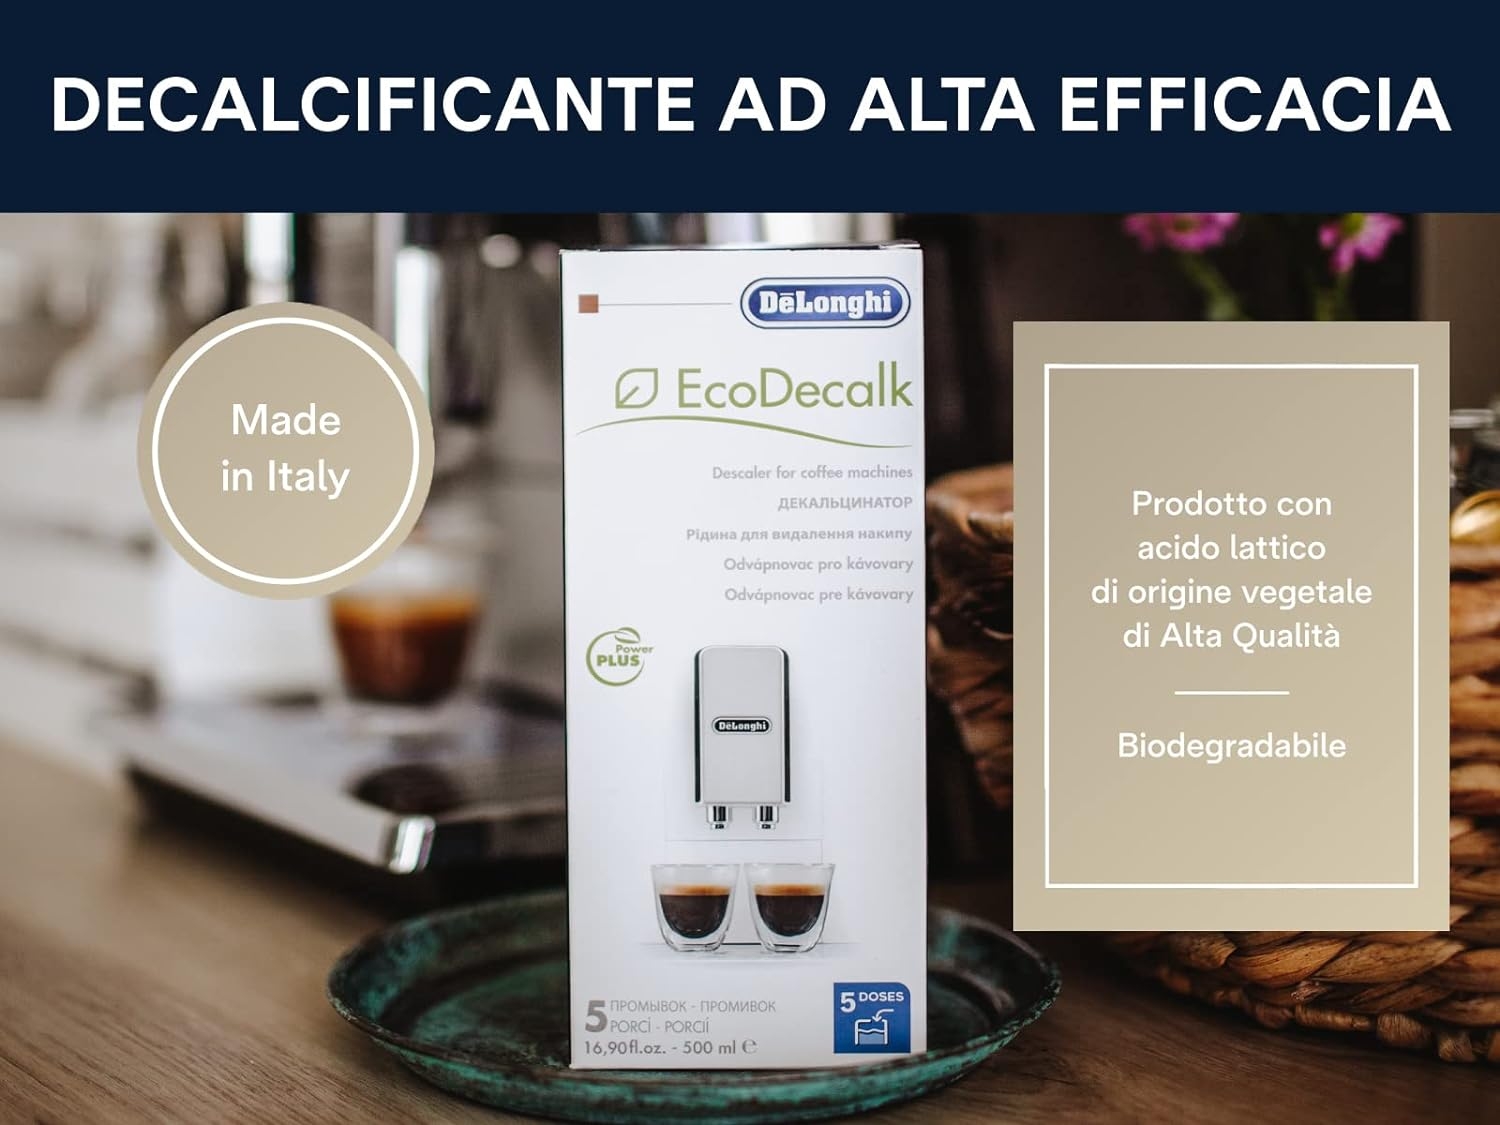 EcoDecalk Mini - 2 doses de 100 ml de détartrant pour machine à